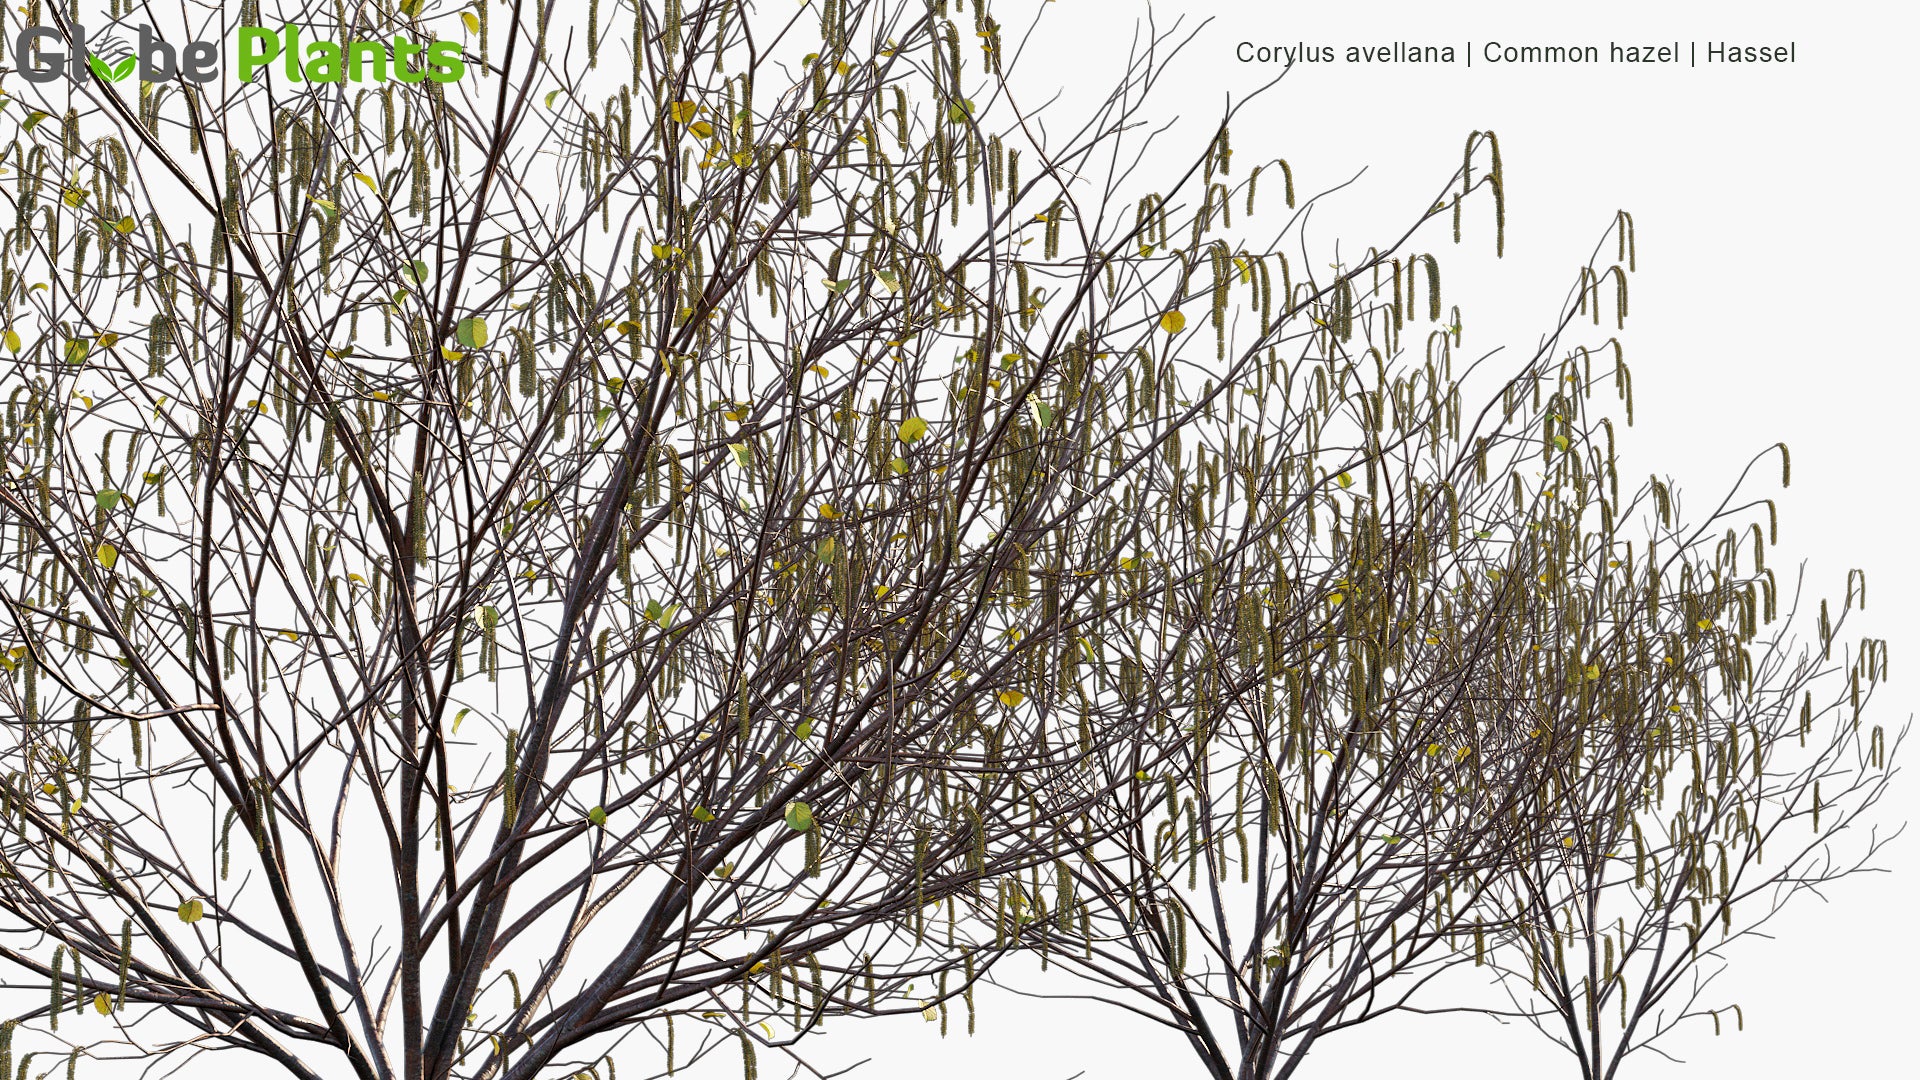 Corylus Avellana - Common Hazel, Hassel